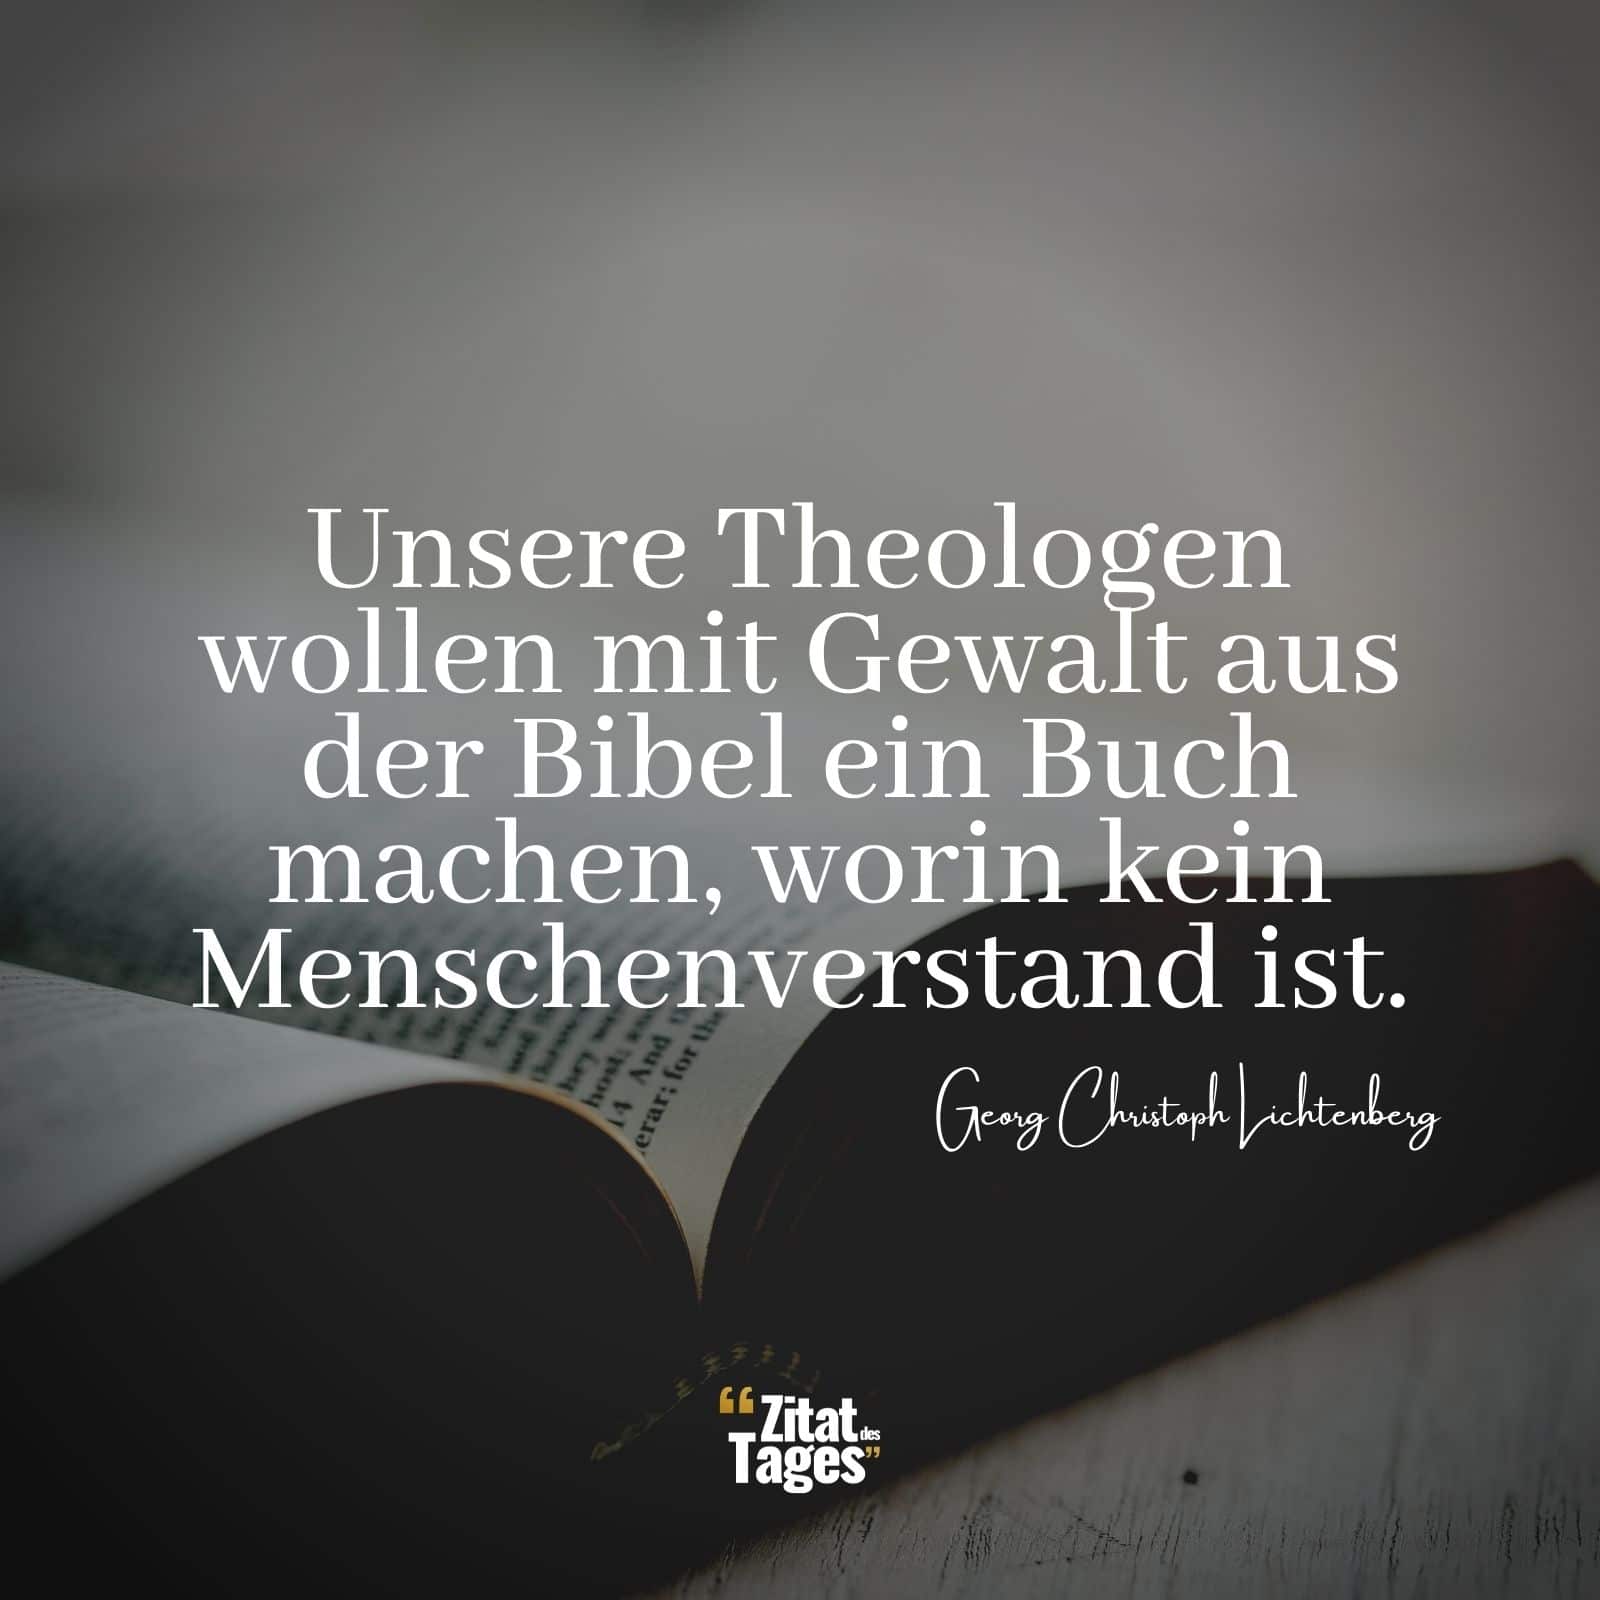 Unsere Theologen wollen mit Gewalt aus der Bibel ein Buch machen, worin kein Menschenverstand ist. - Georg Christoph Lichtenberg